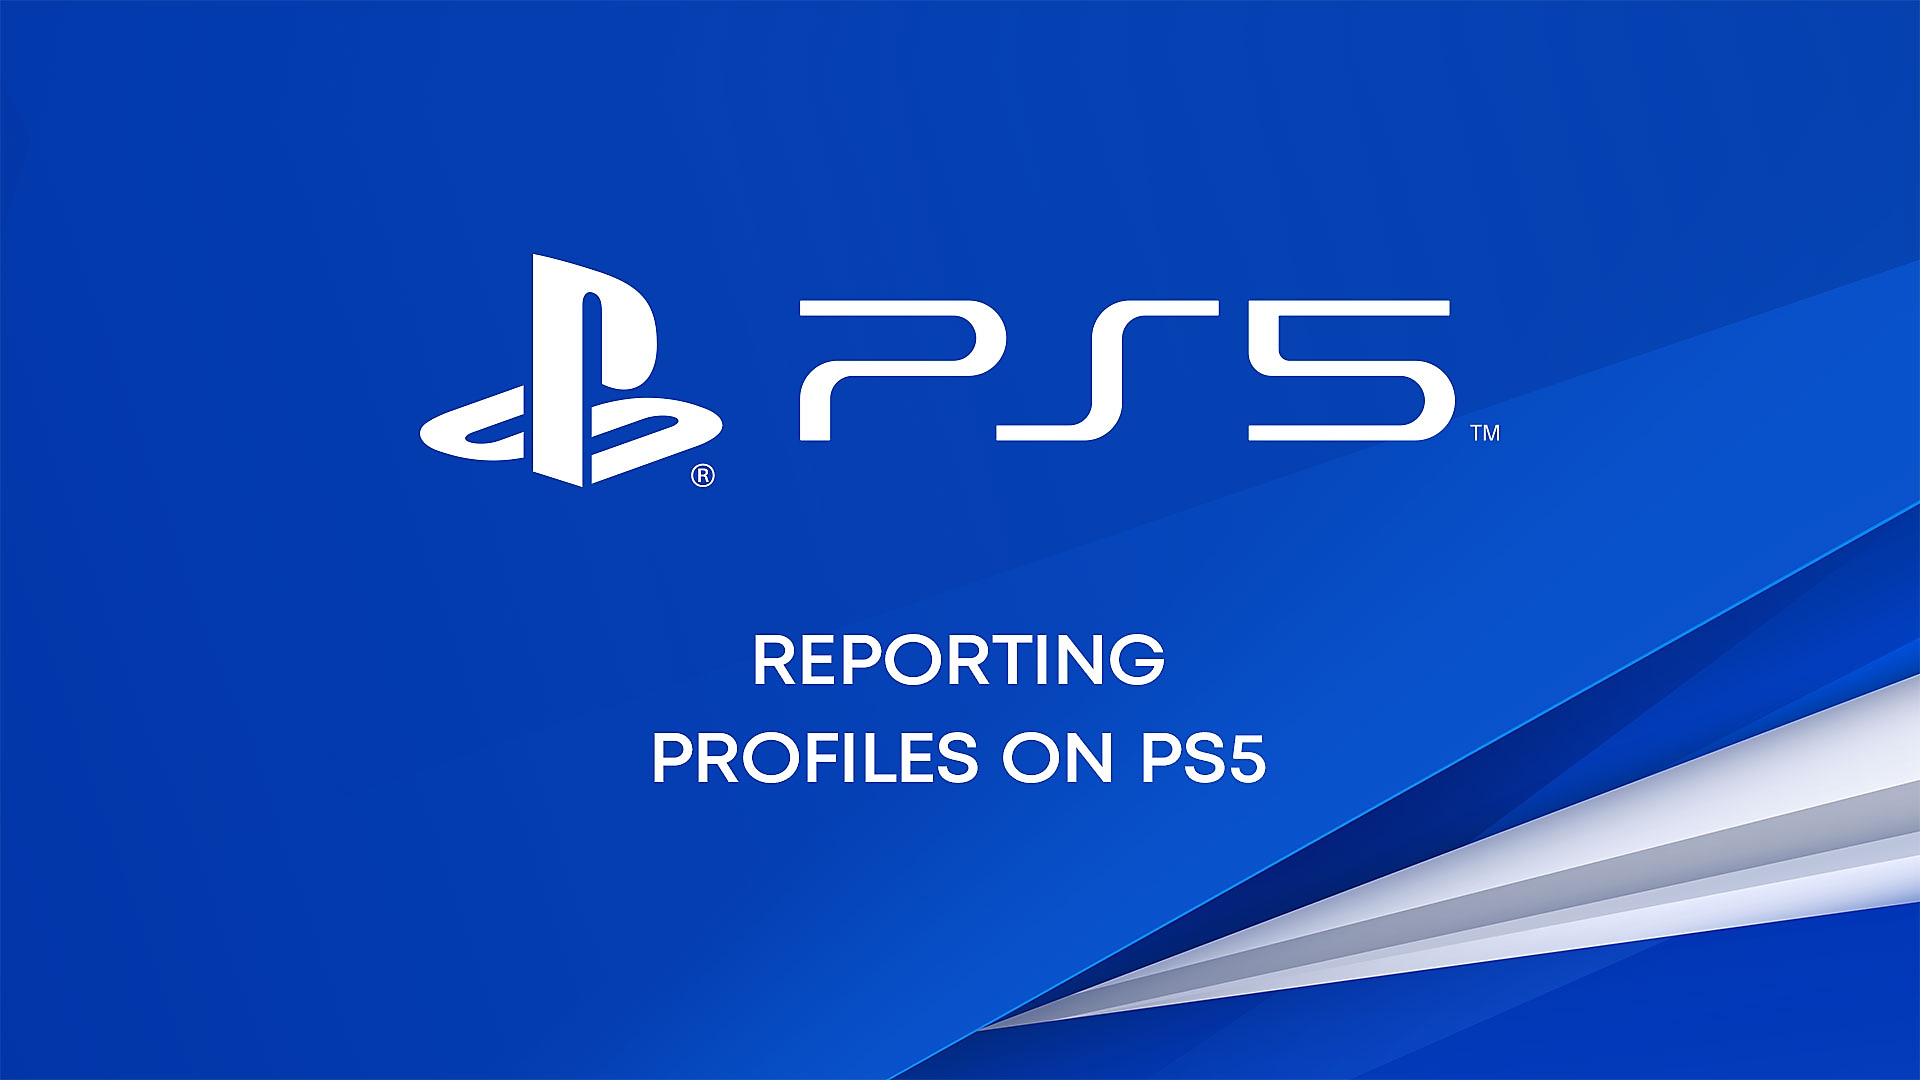 Melden von Profilen auf PS5-Konsolen